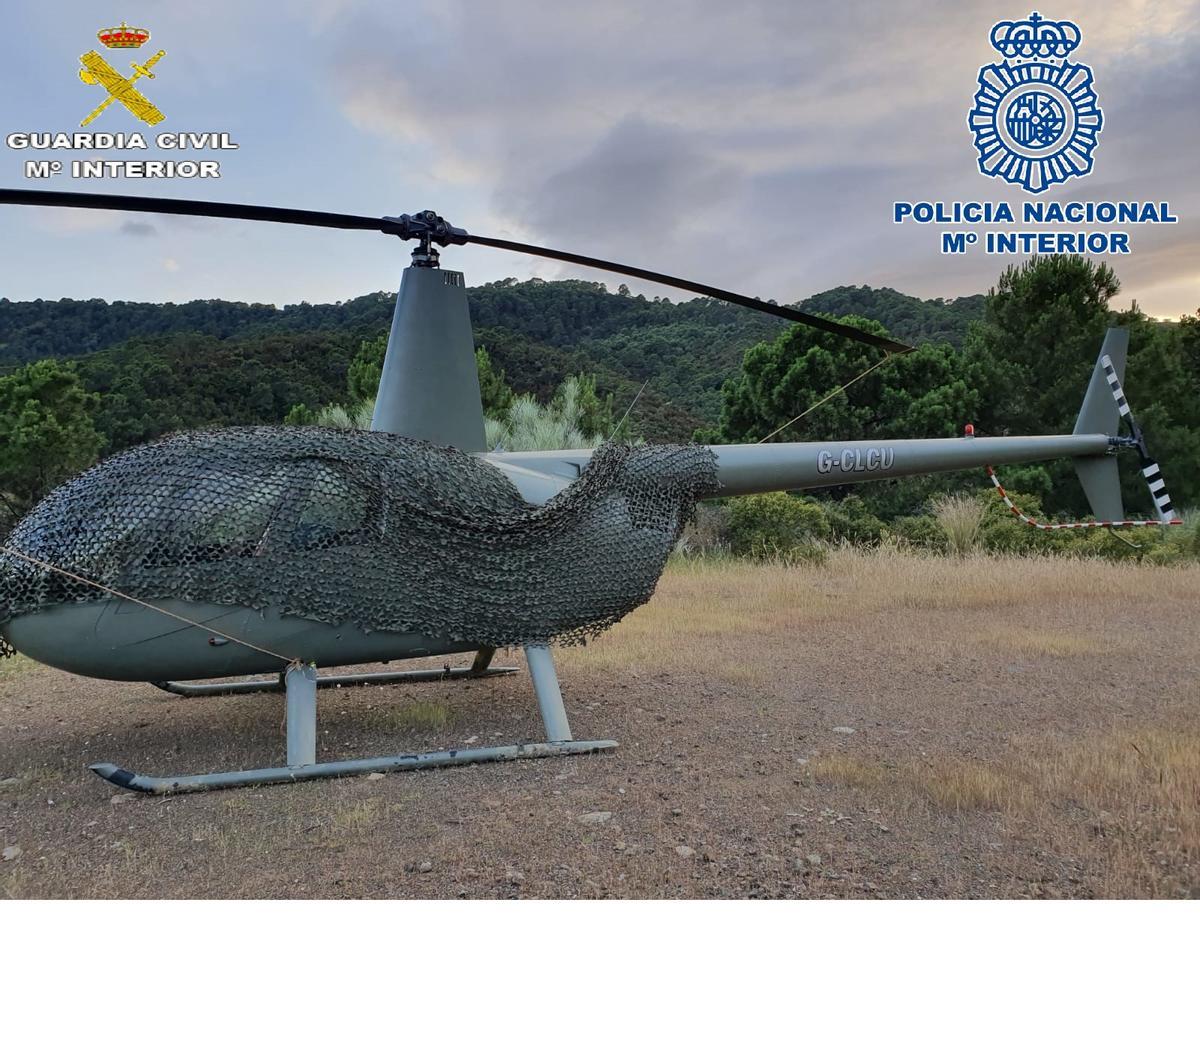 Imagen del helicóptero localizada por los investigadores.